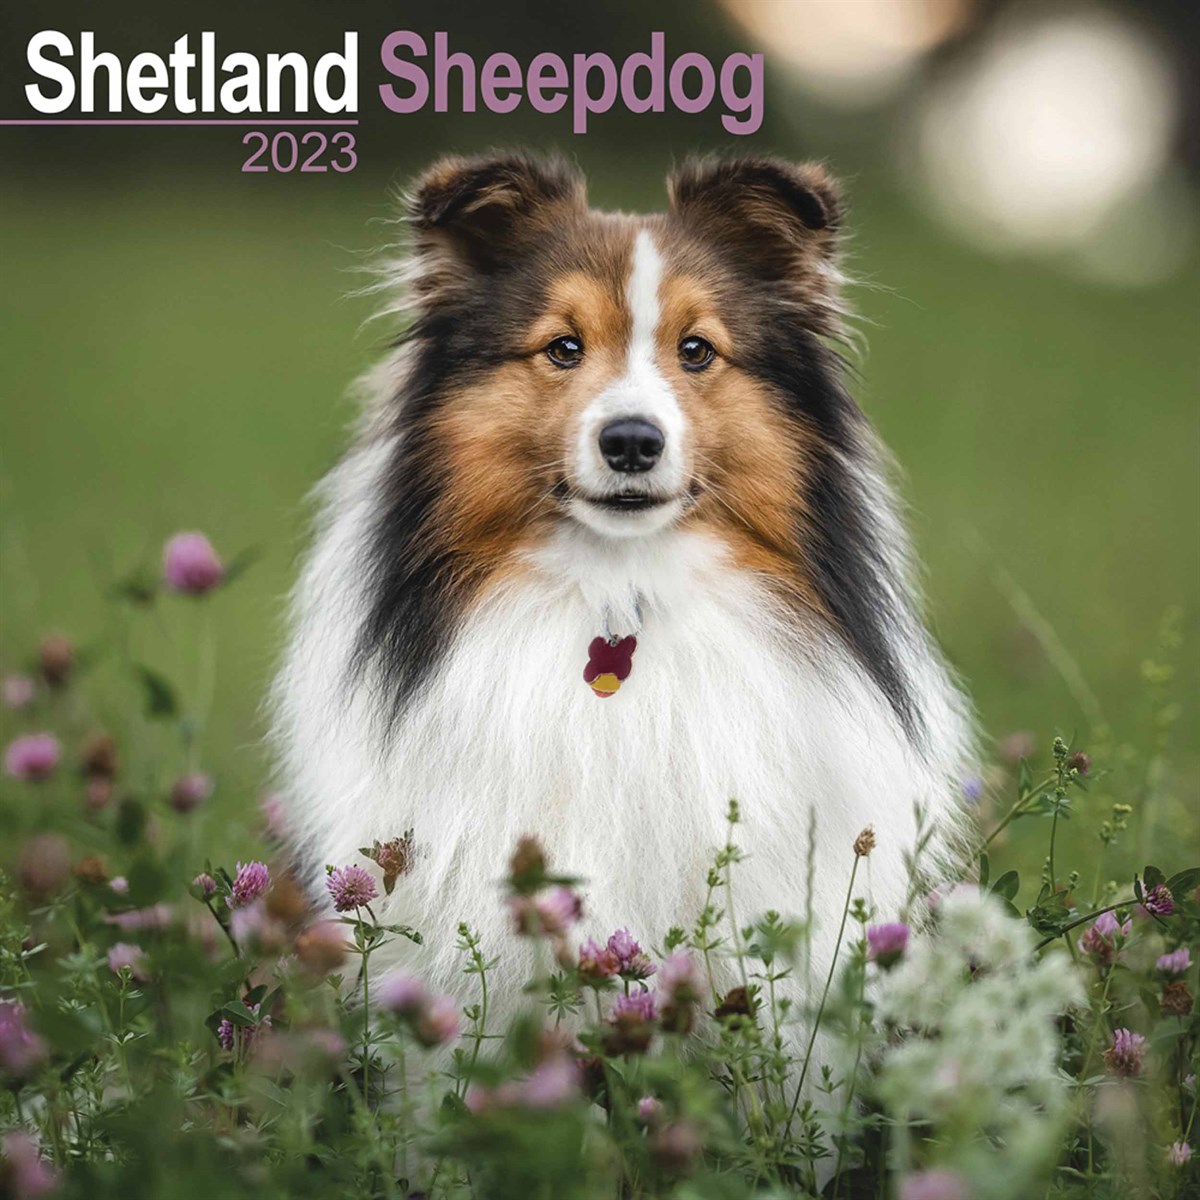 Shetland Sheepdog 2023 Calendars